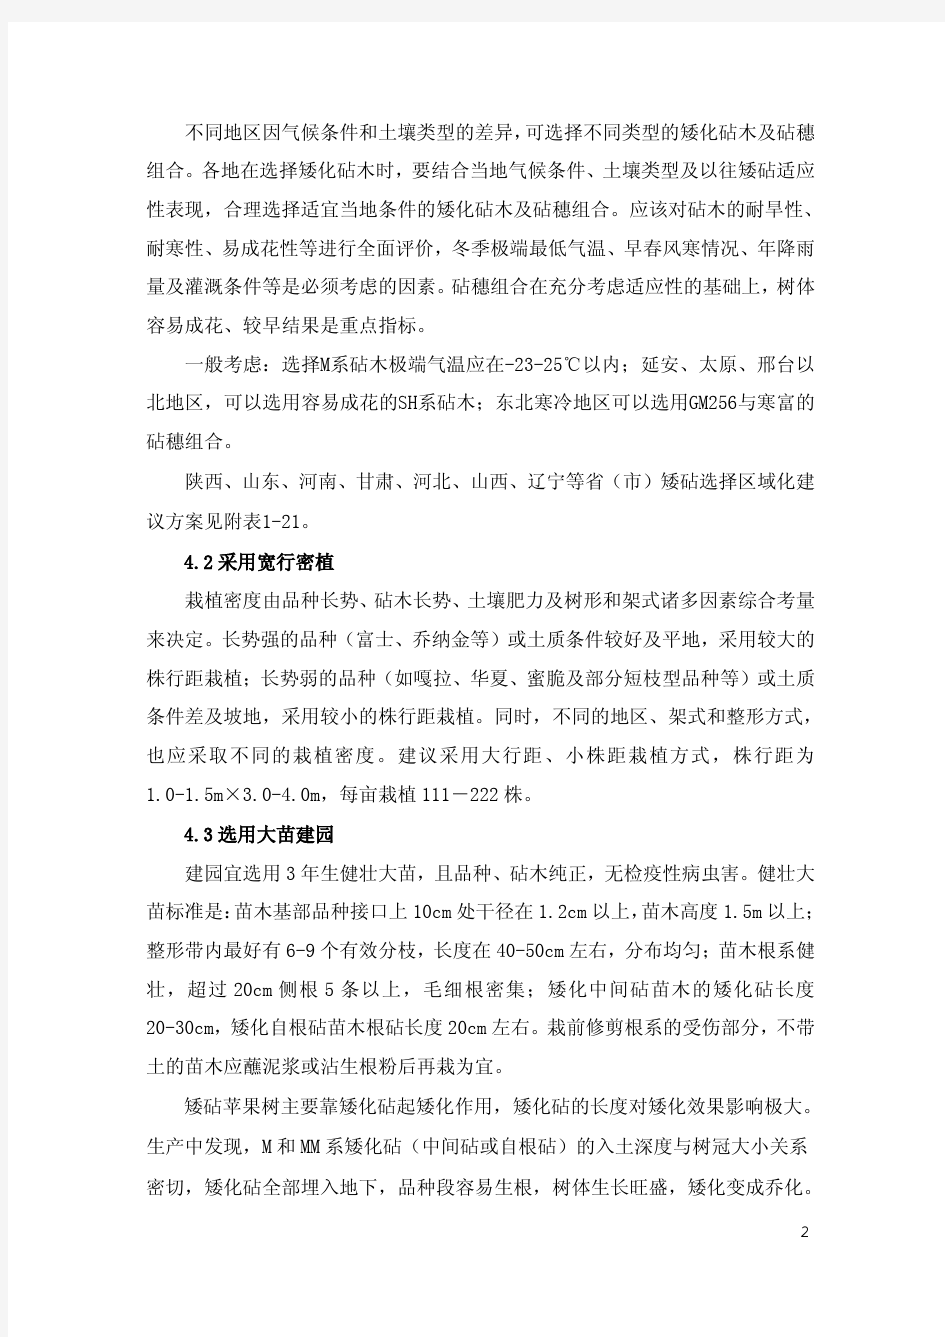 2013-11-17苹果矮砧集约栽培模式技术规范(定稿)